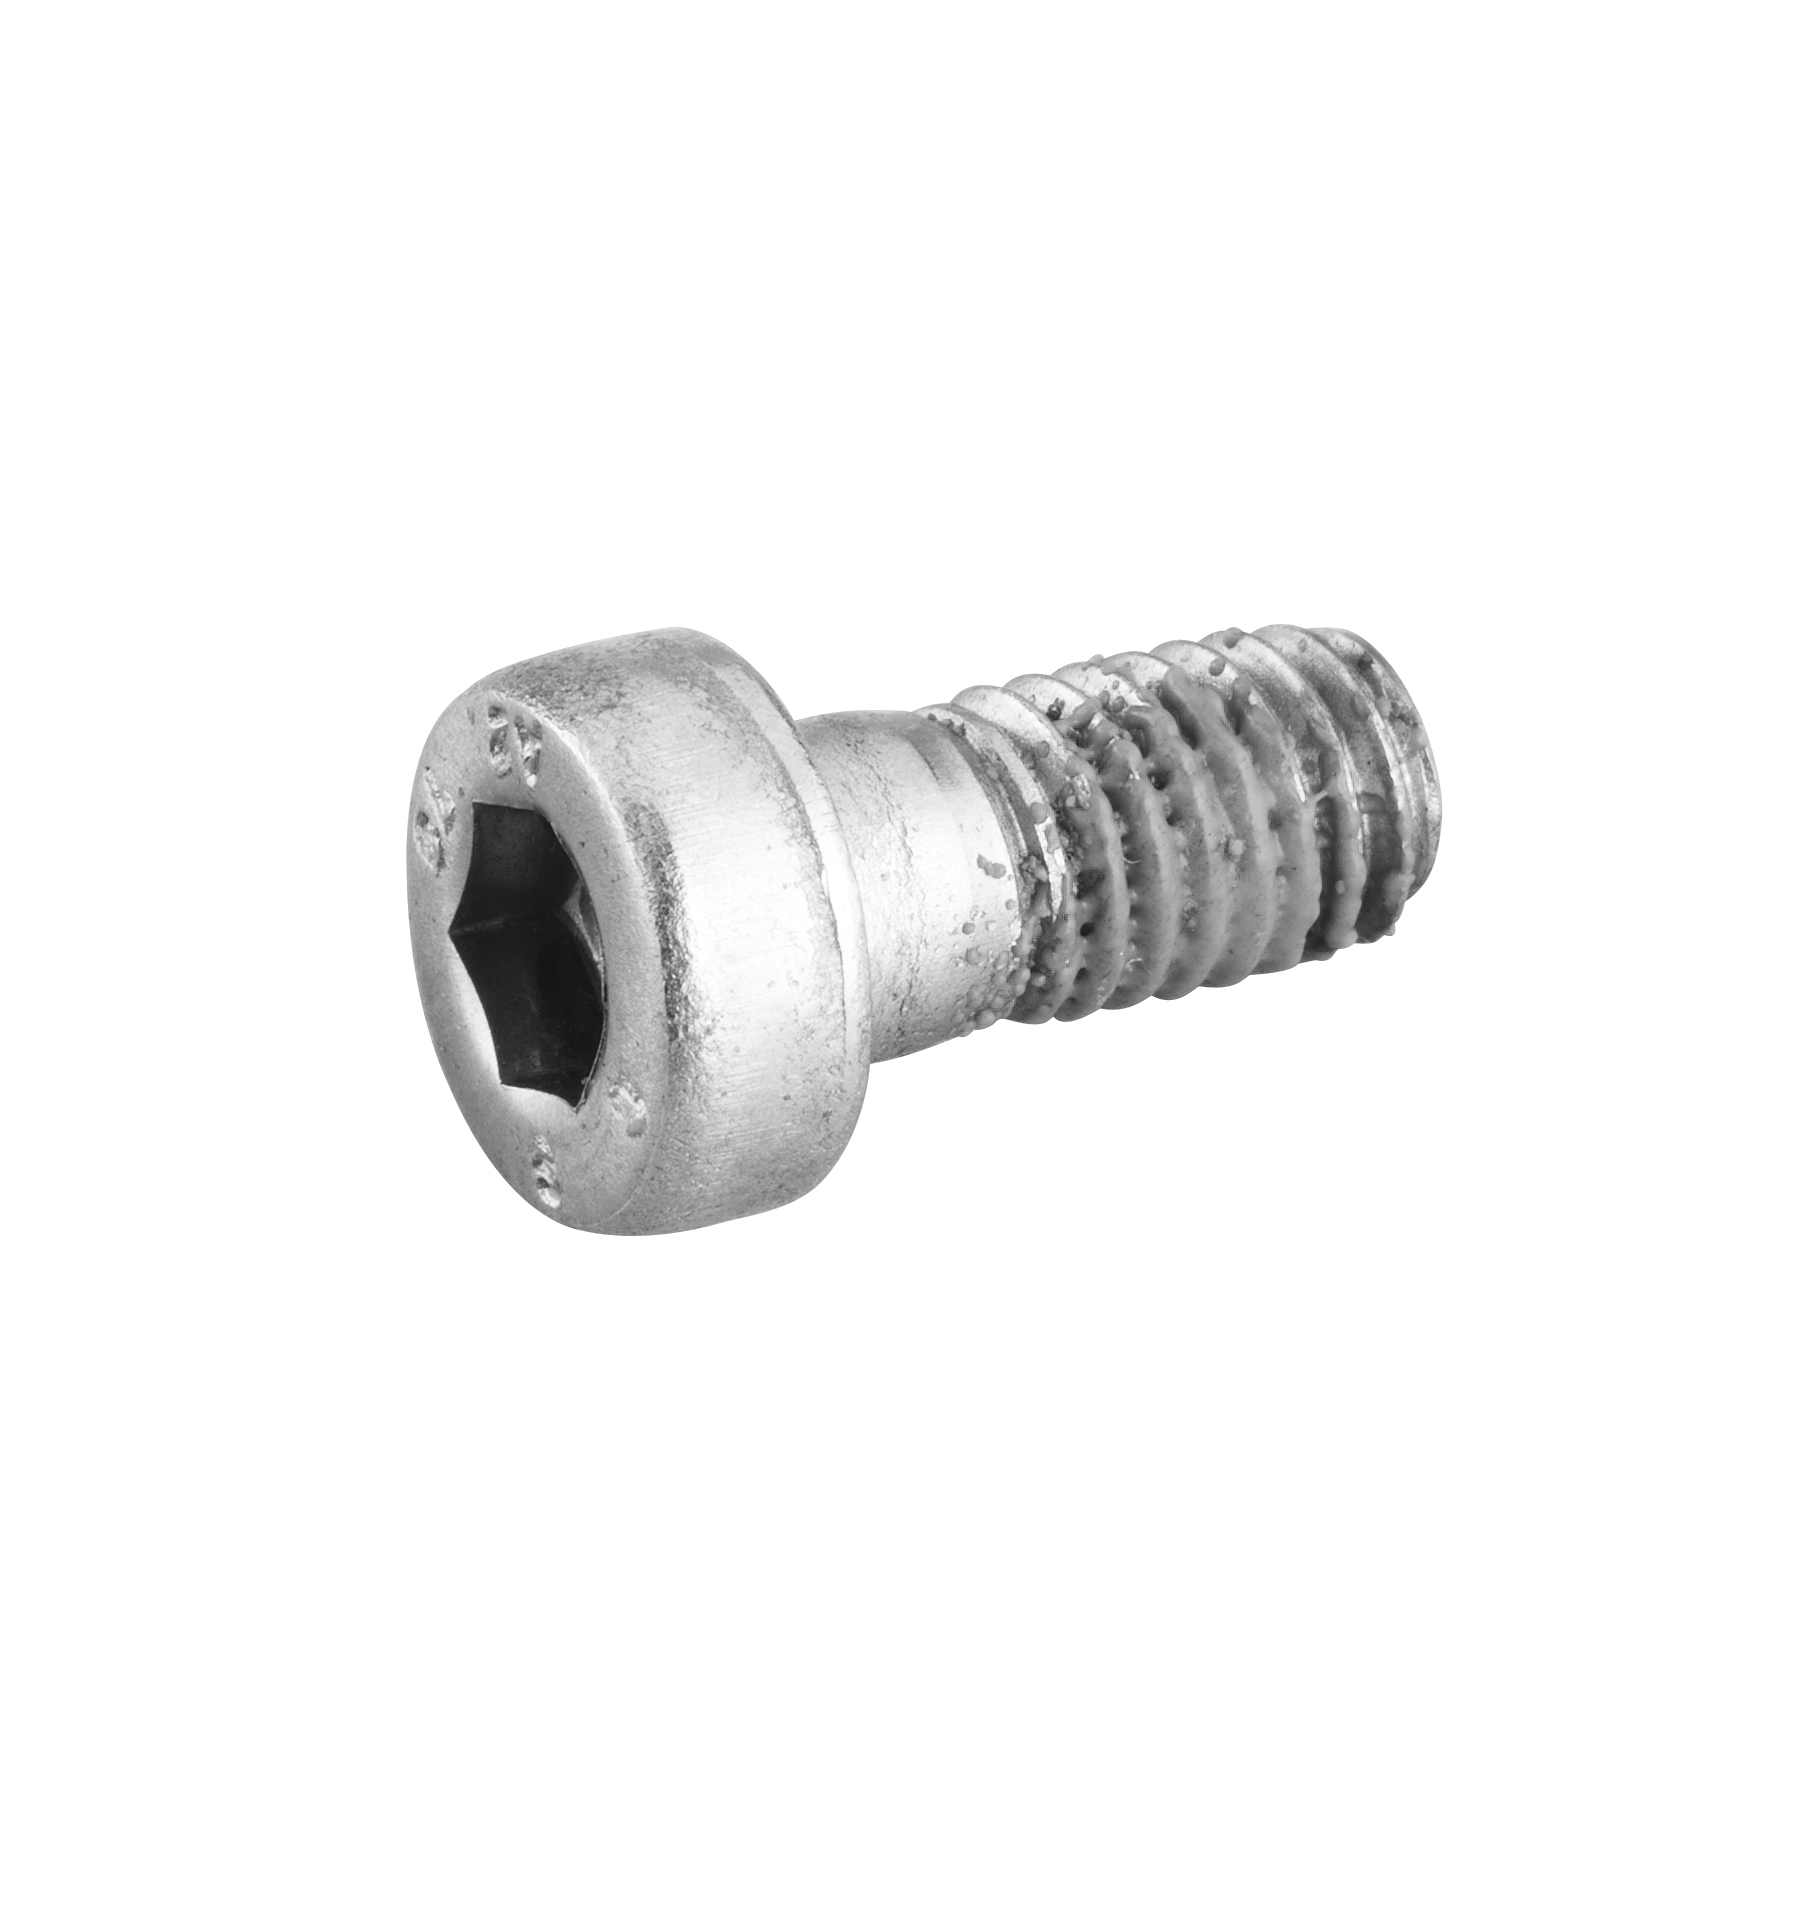 εικόνα του DORNBRACHT Mounting Cylinder head screw with hexagon socket M5 x 10 mm - #09303002790